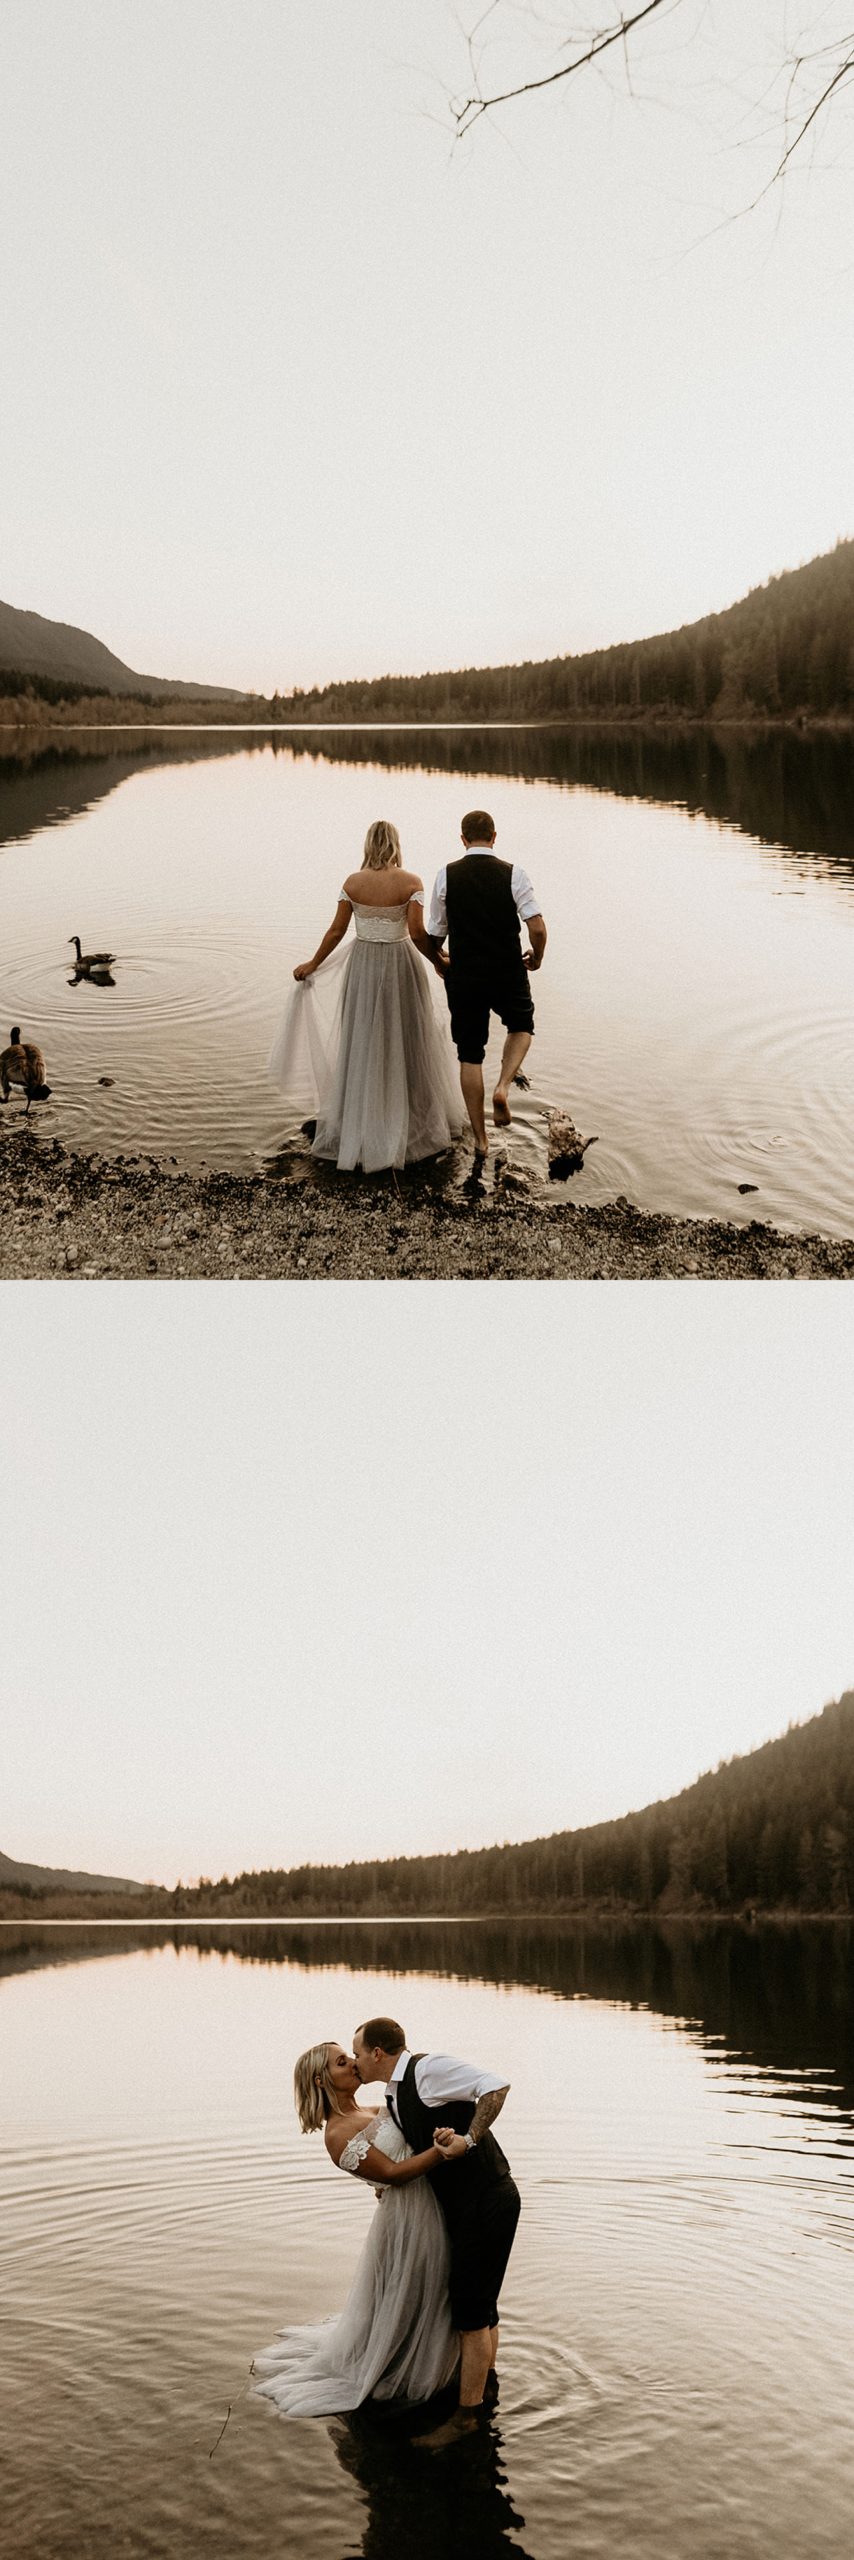 bride and groom walking together rattlesnake lake landscape